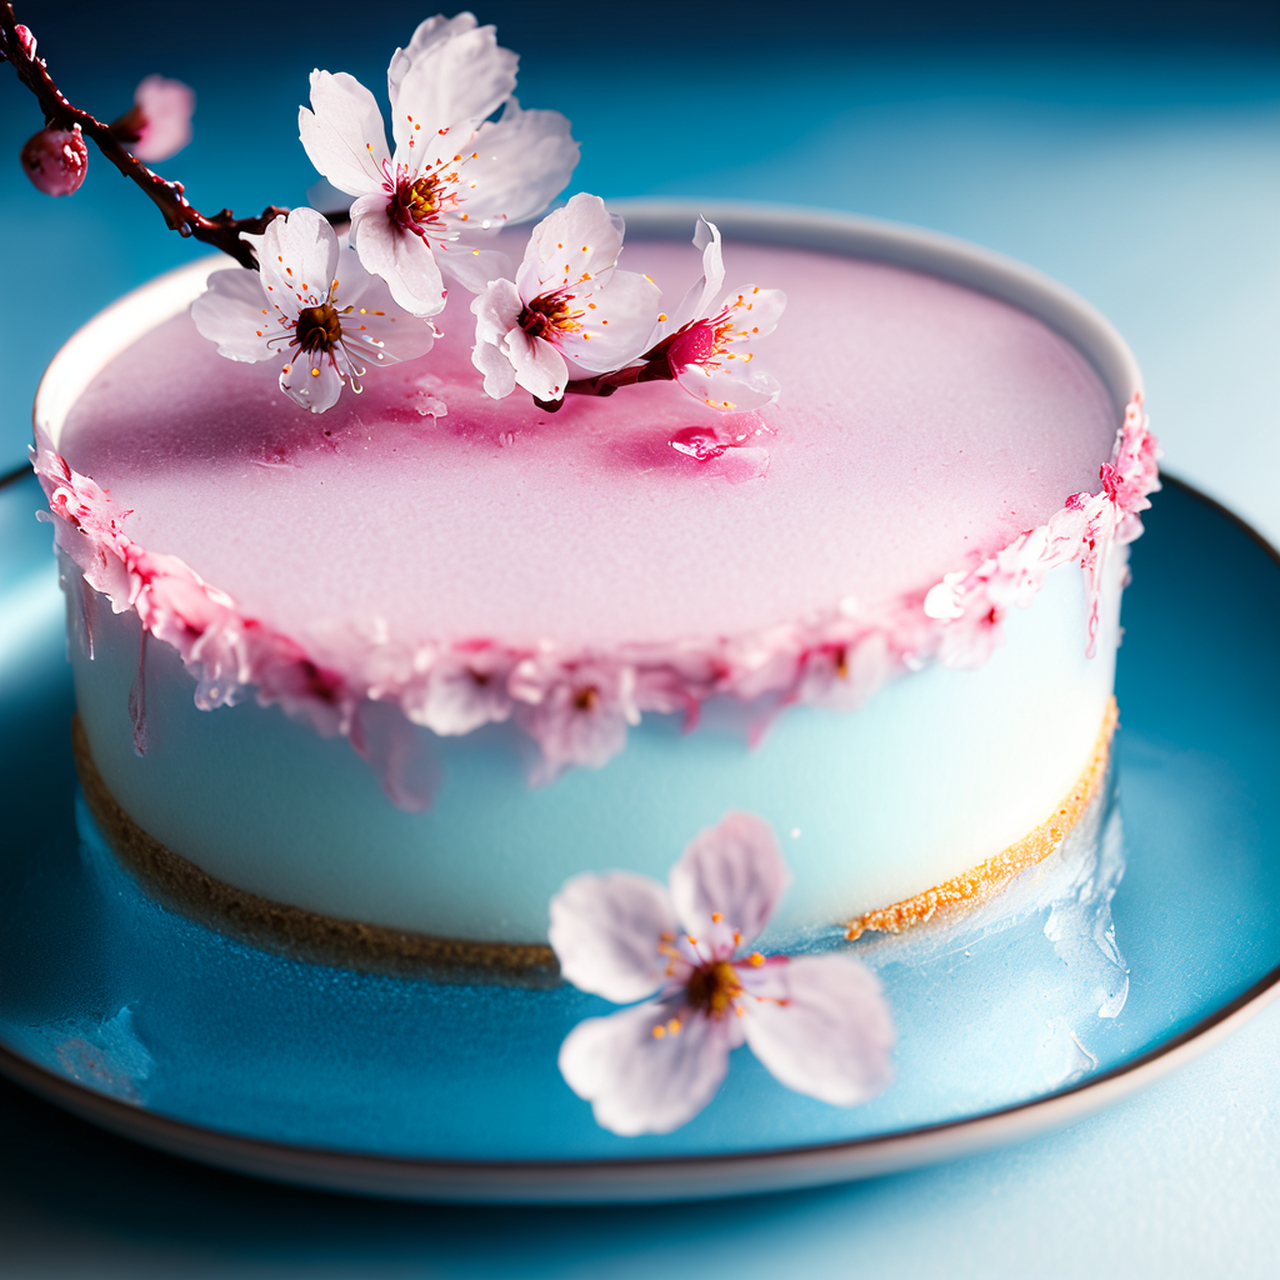 超有意境的冰皮樱花蛋糕,祝福文心一格一周年生日快乐呦!